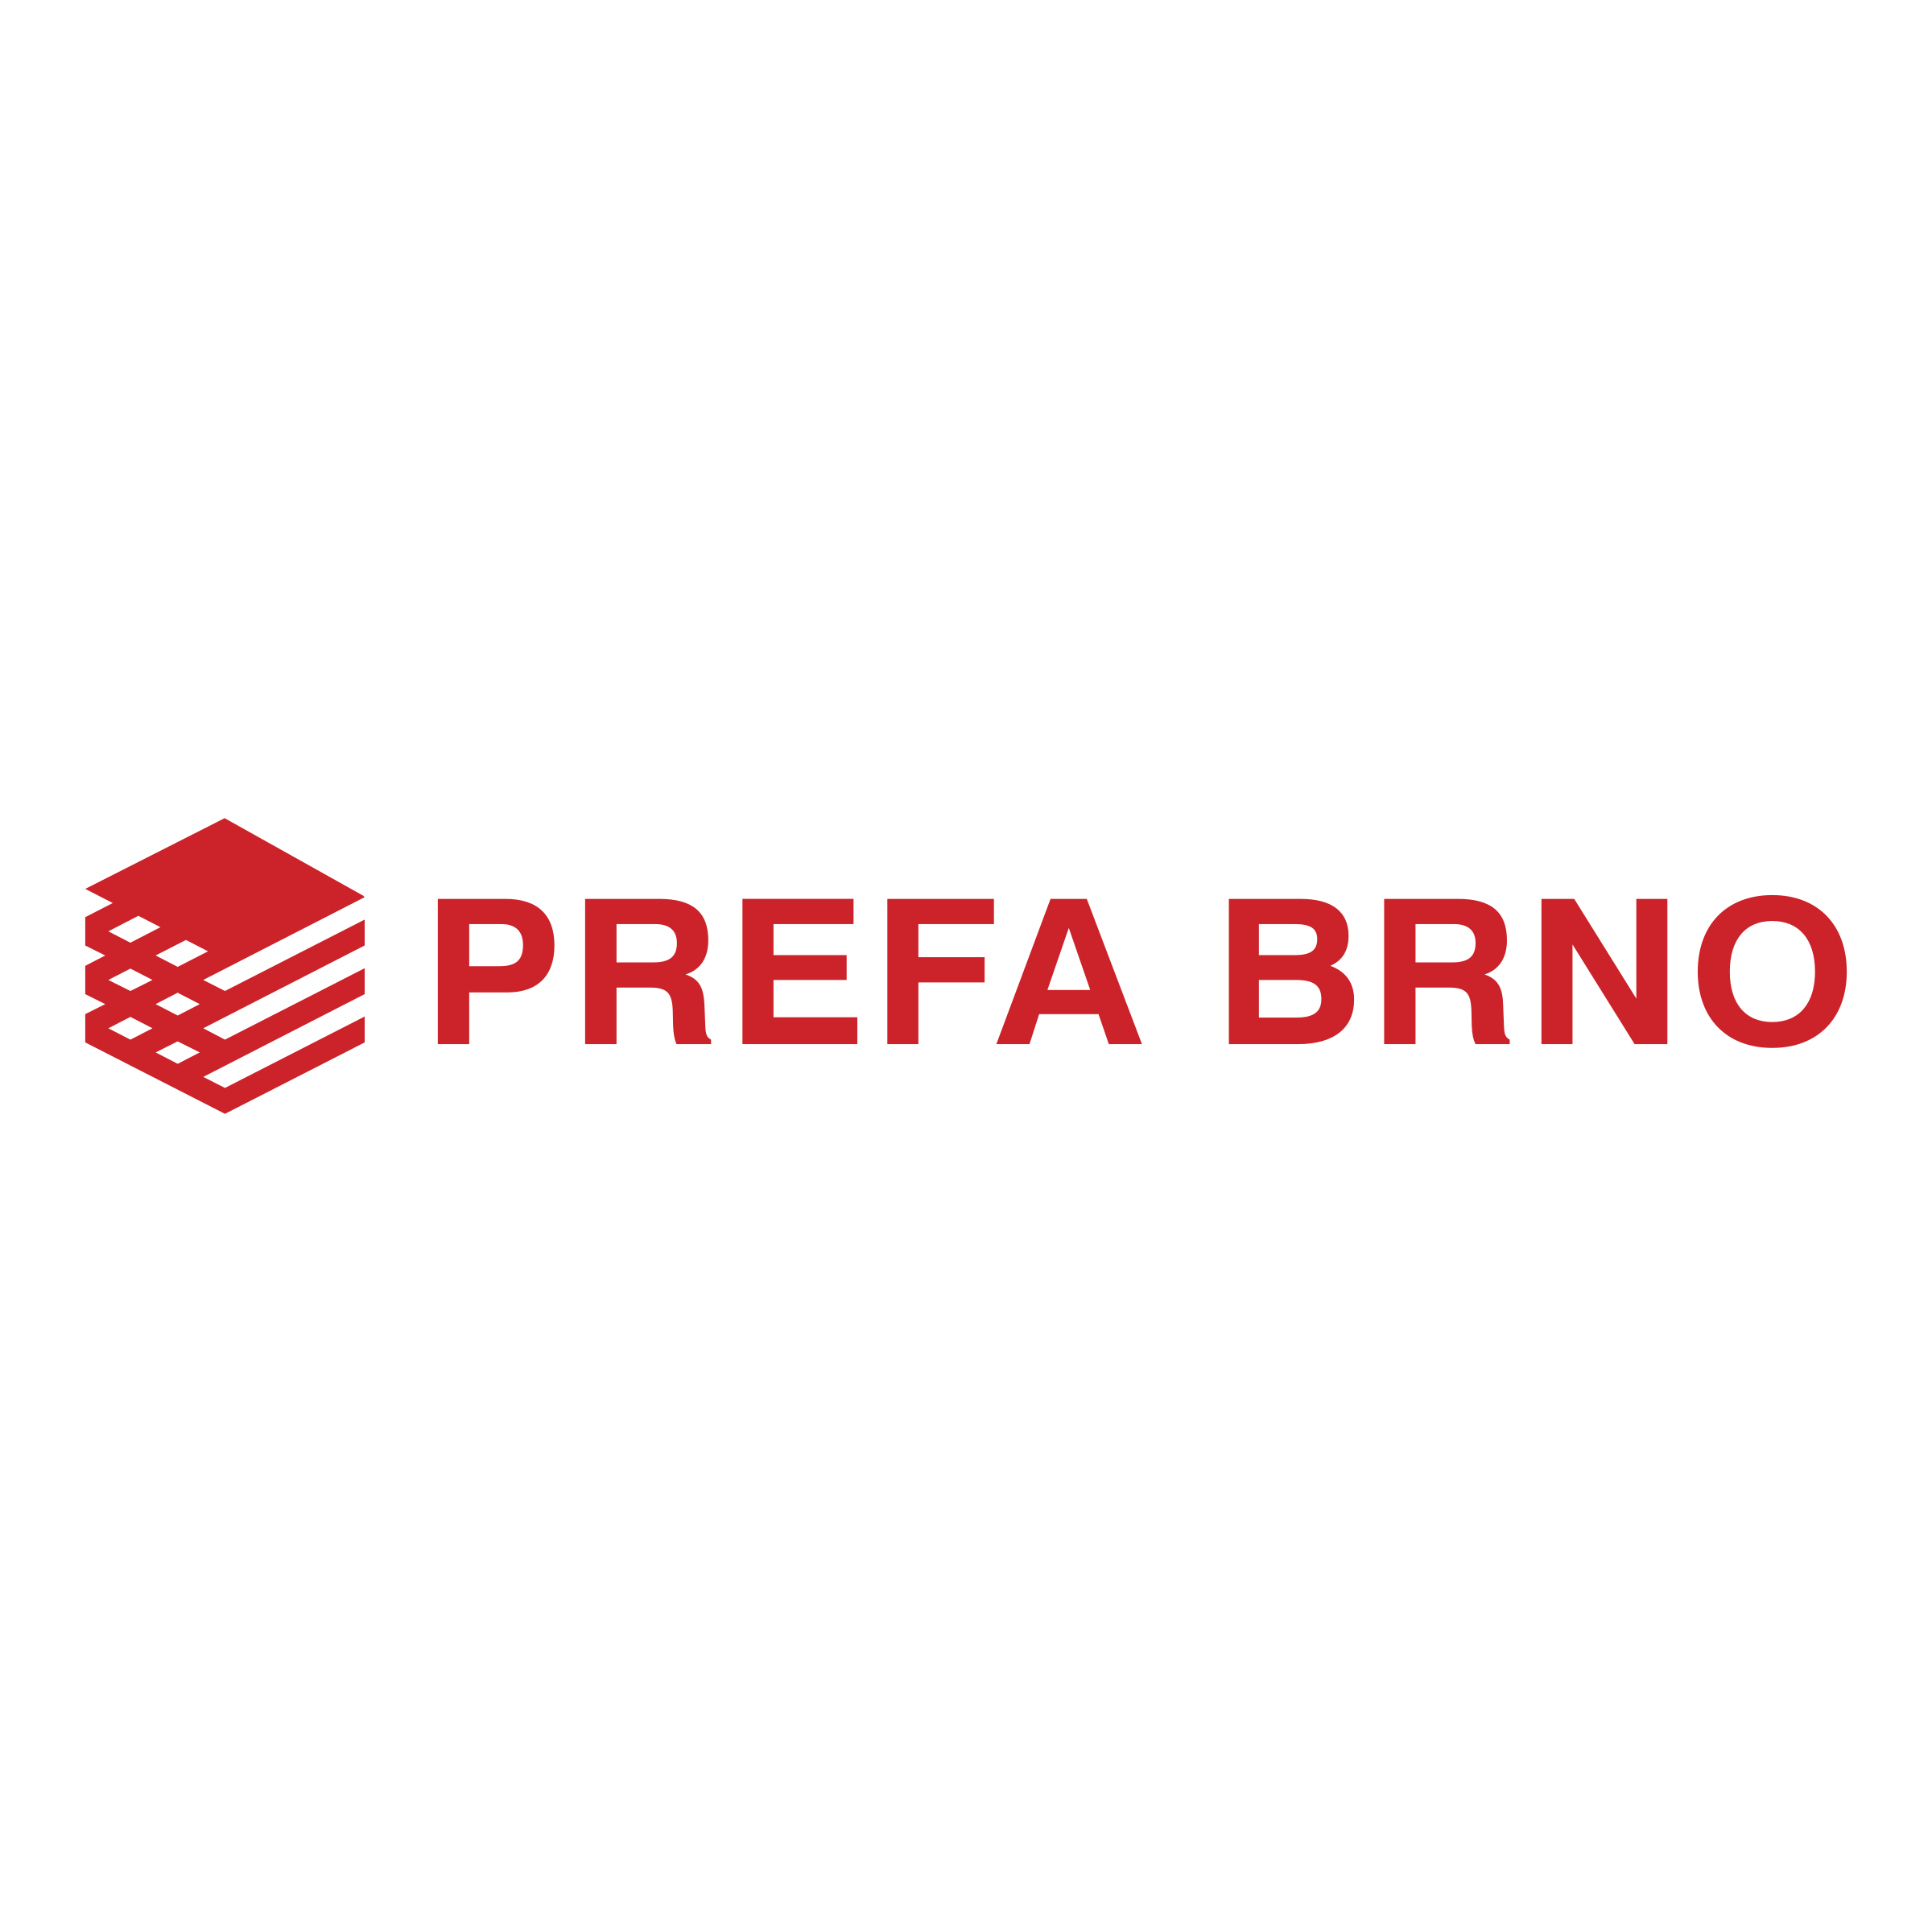 Brno Logo - Prefa Brno Logo PNG Transparent & SVG Vector